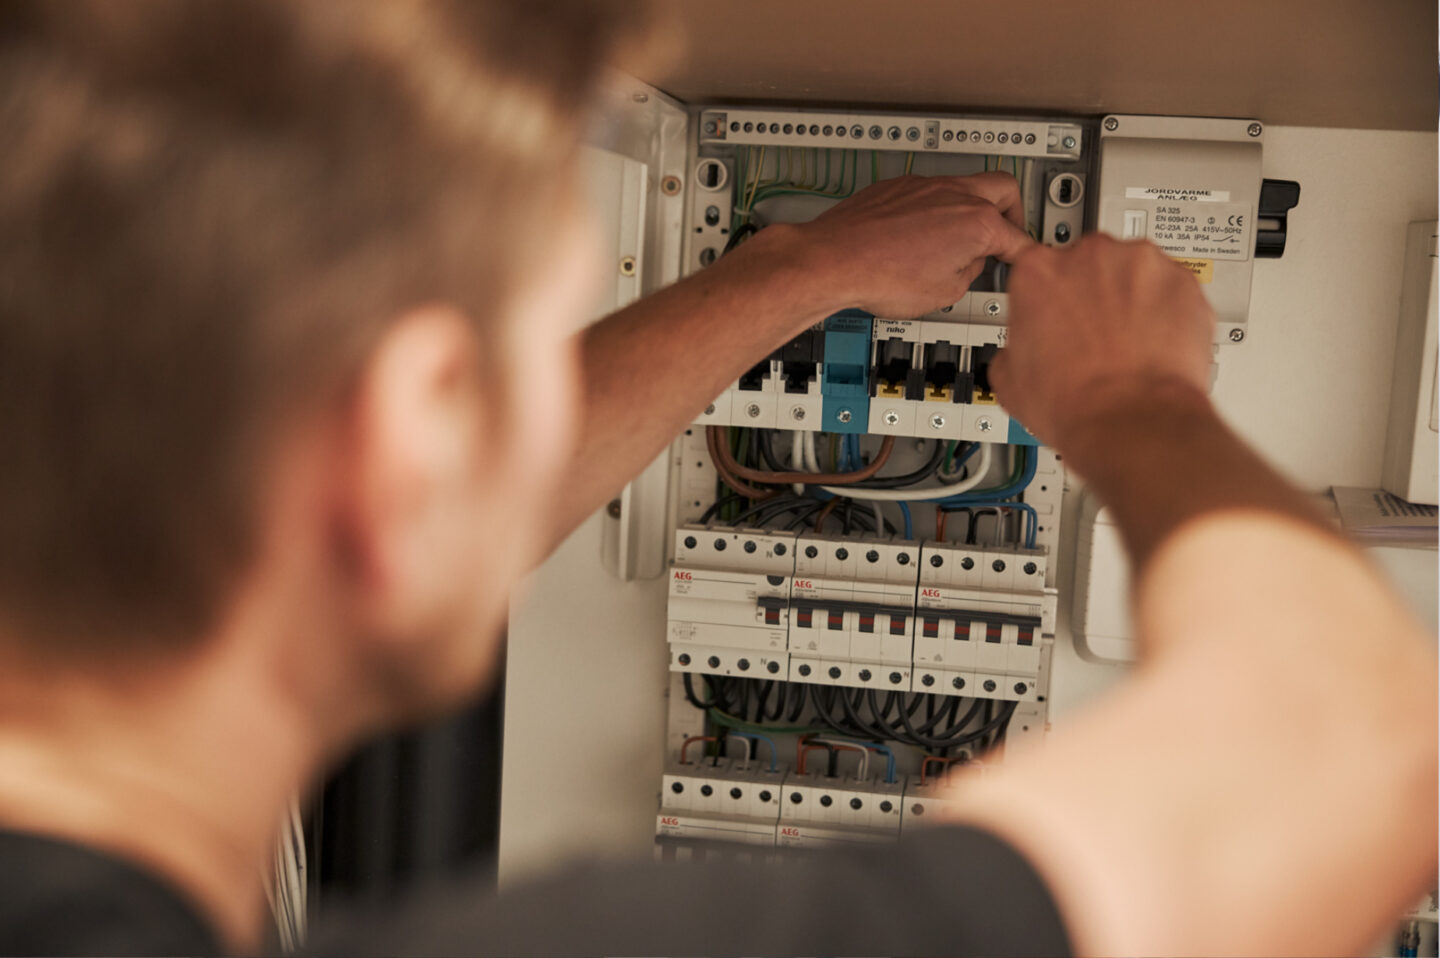 Billig elektriker arbejder i gruppetavle, sikker el-installation